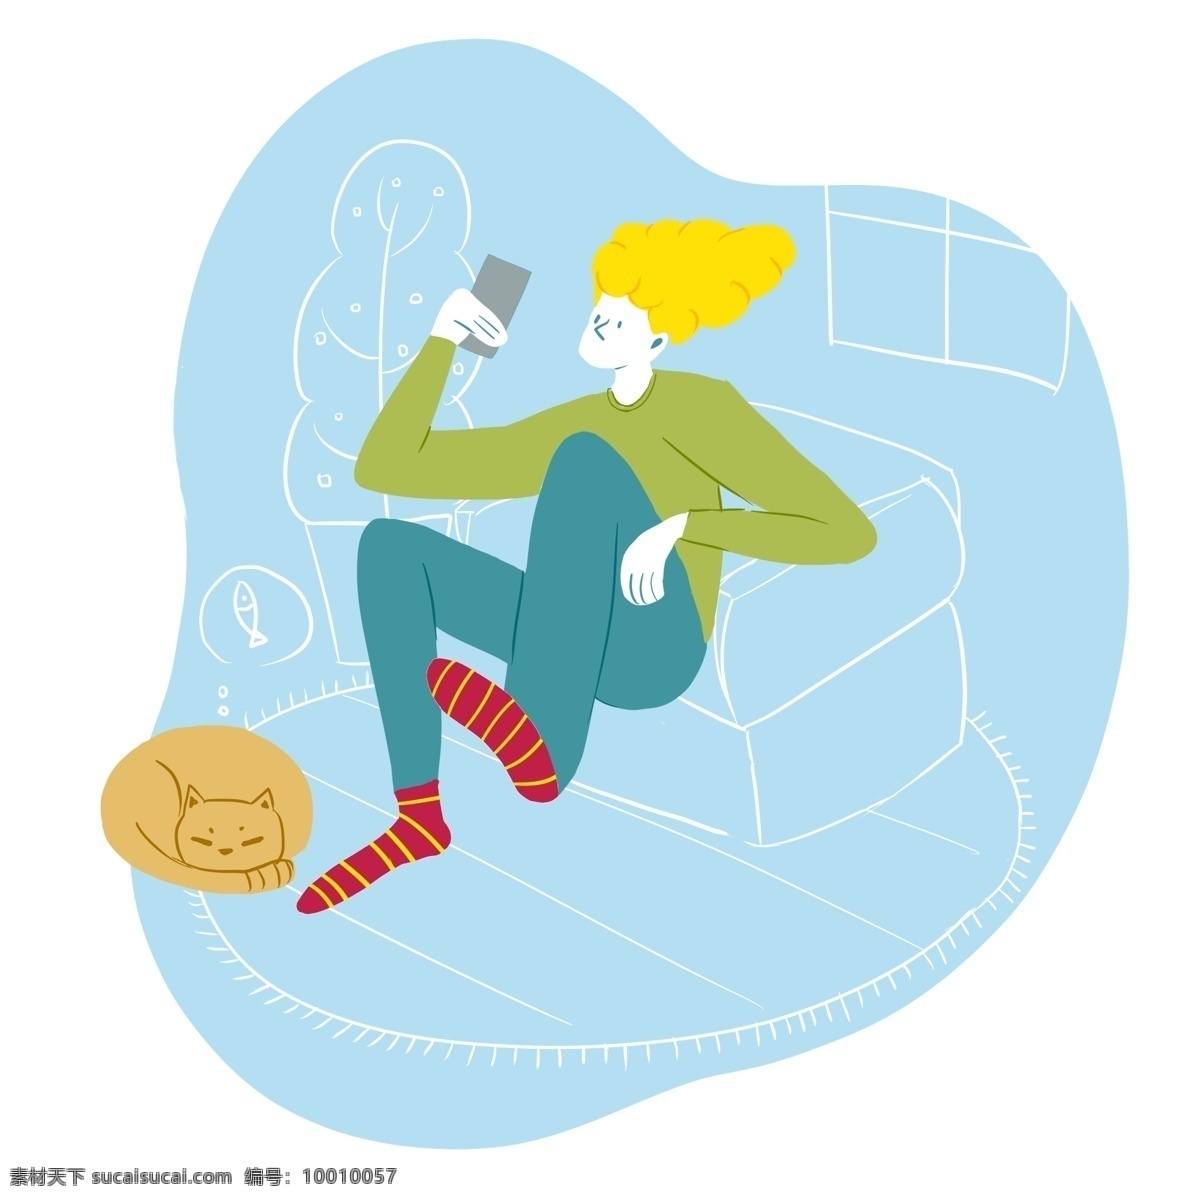 虚实 象生 趋势 人物 玩 手机 虚实象生 玩手机 坐 沙发 猫咪 休闲